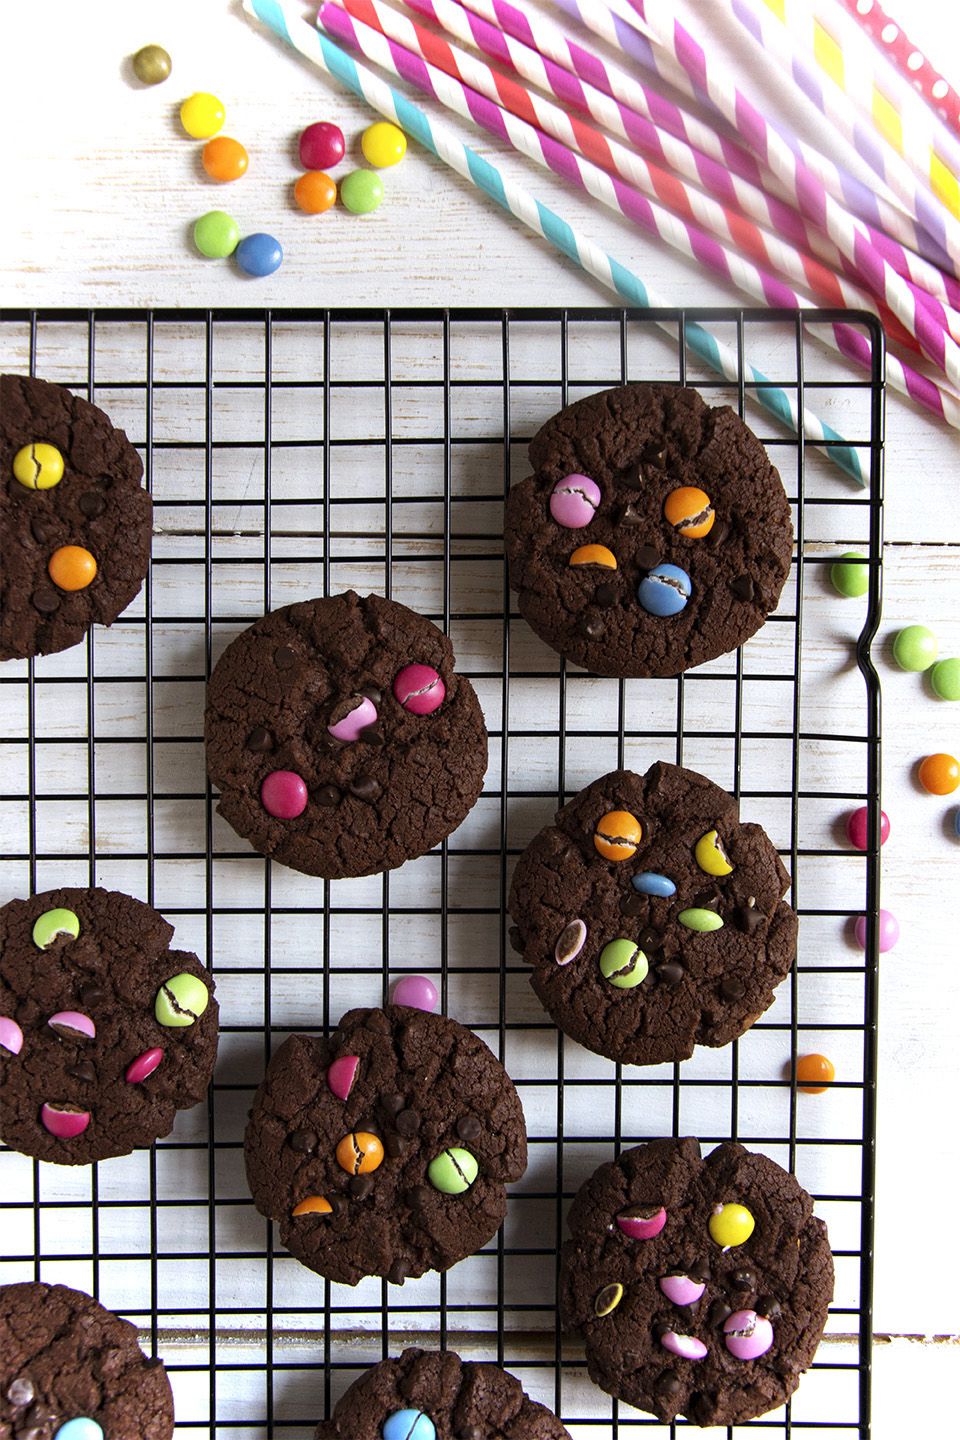 Cookies doppio cioccolato